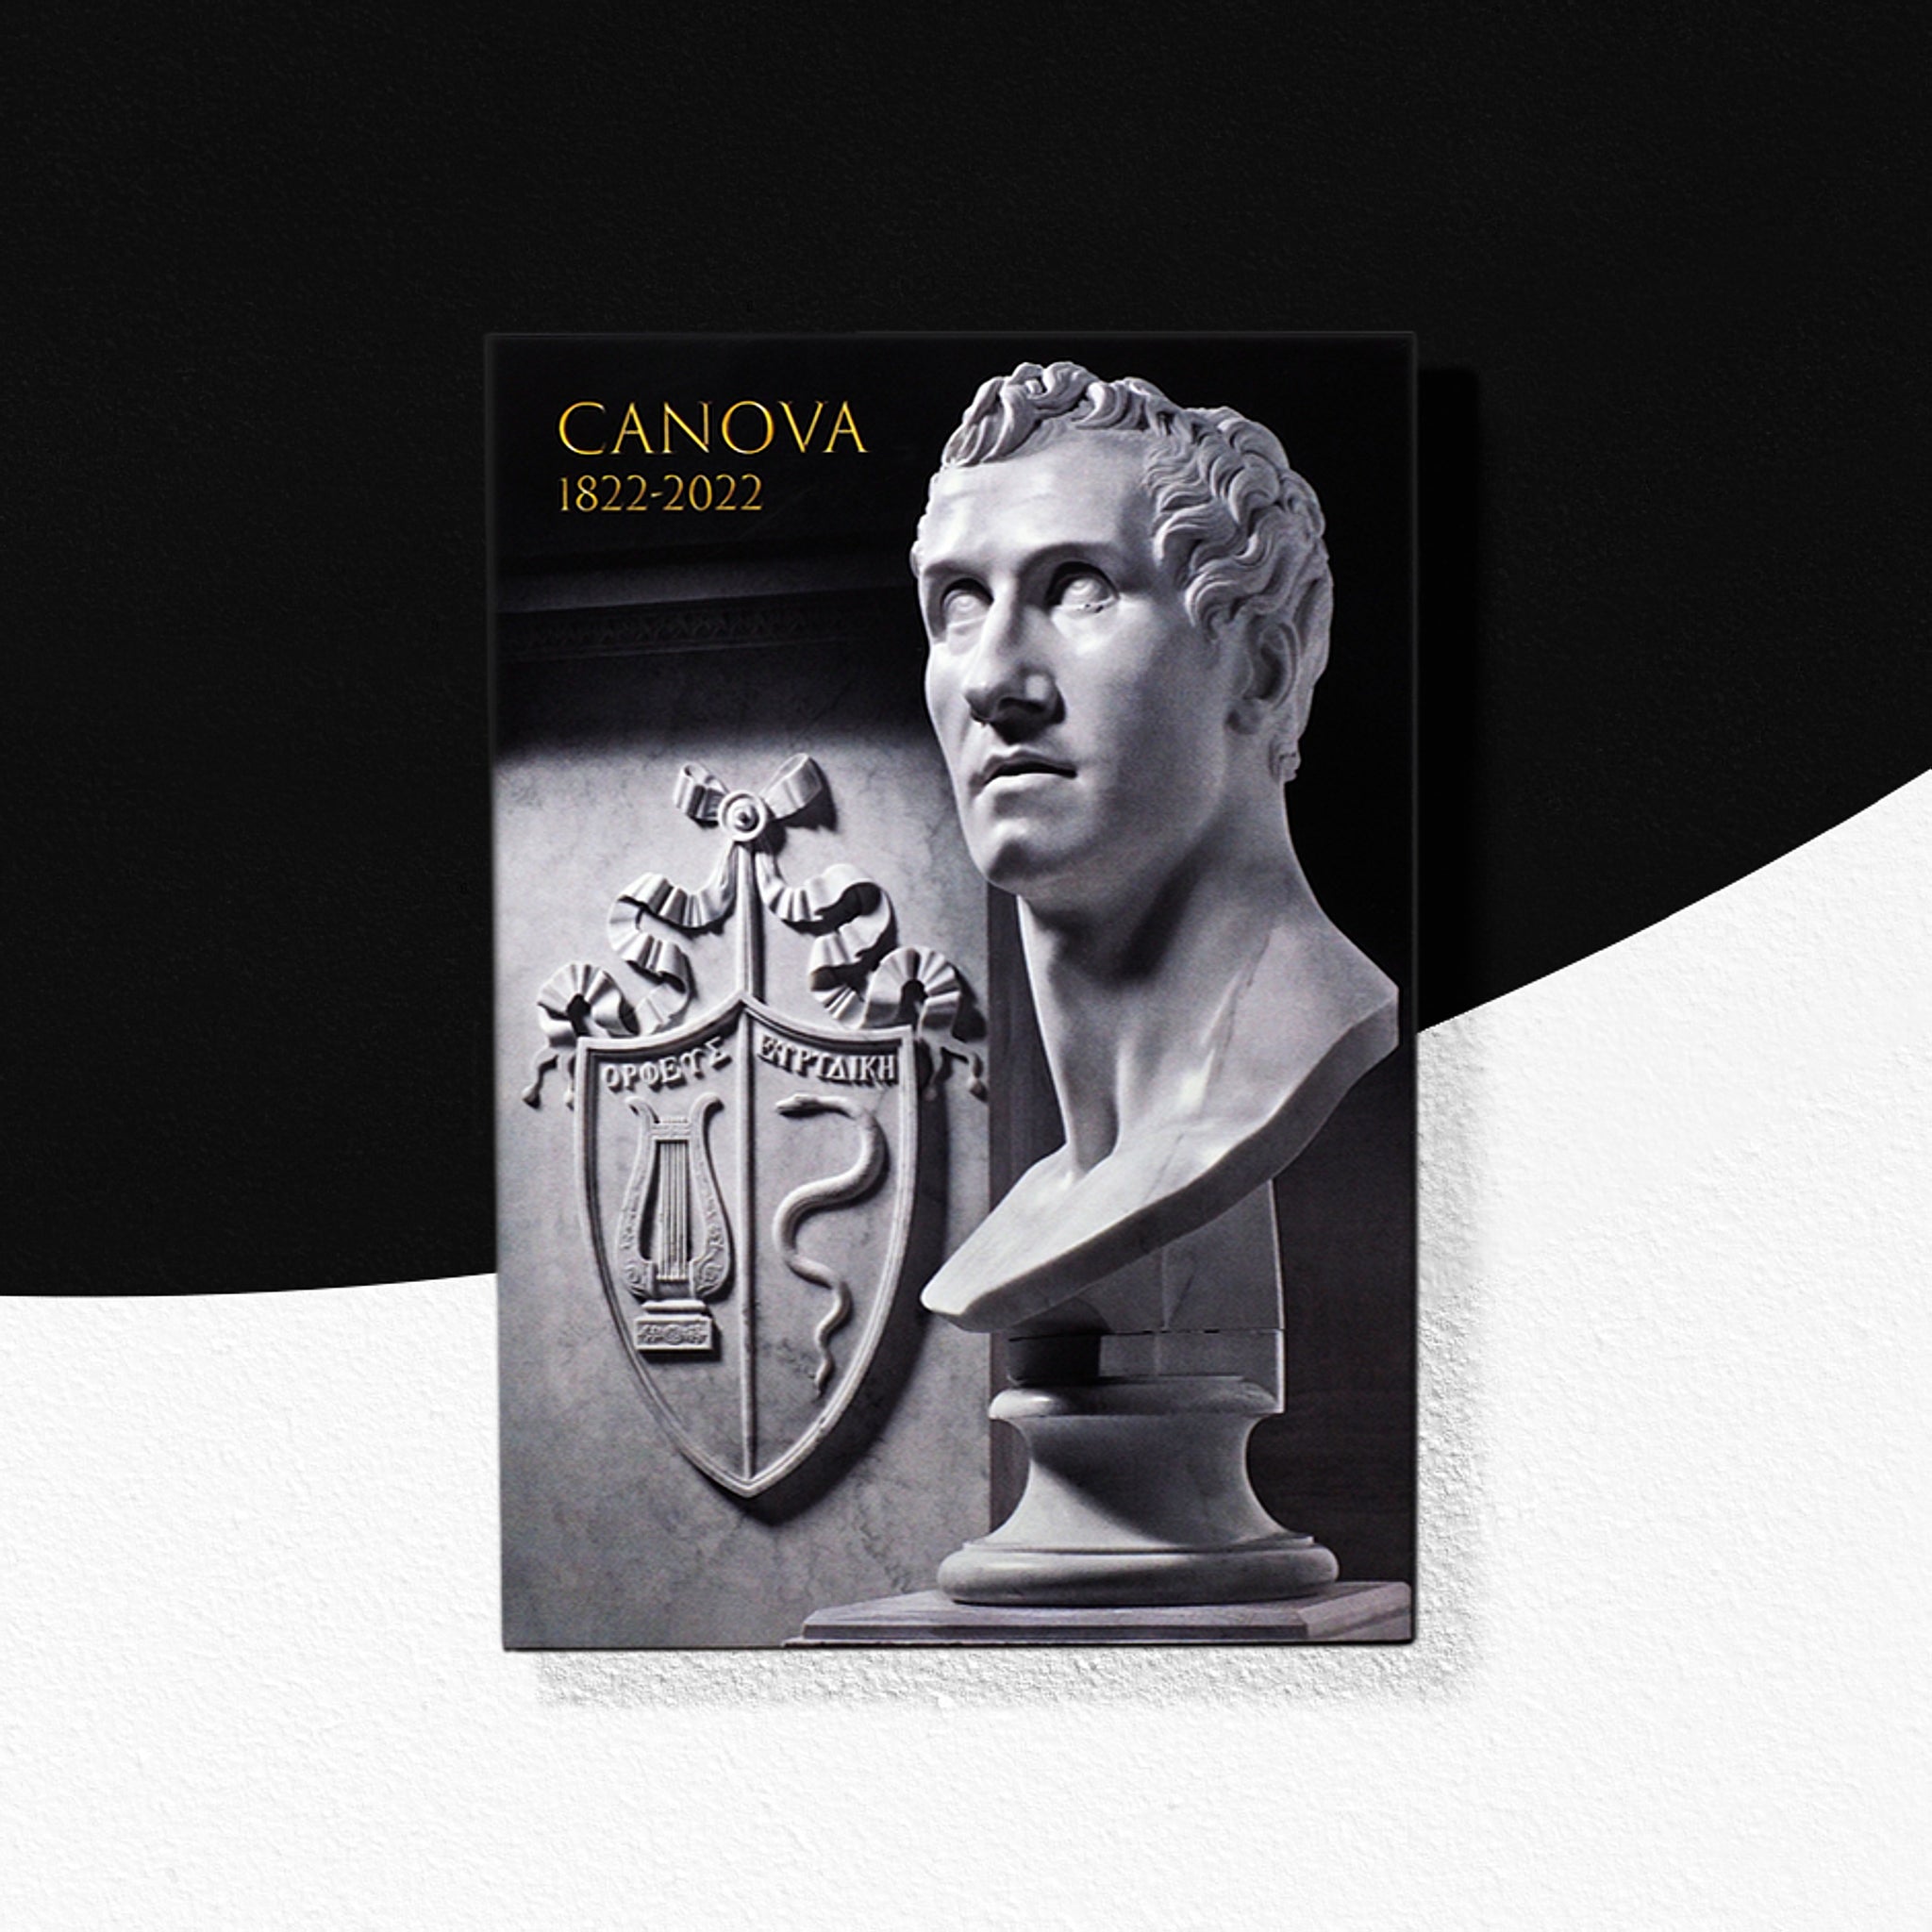 Cartolina con annullo filatelico Antonio Canova 1822-2022